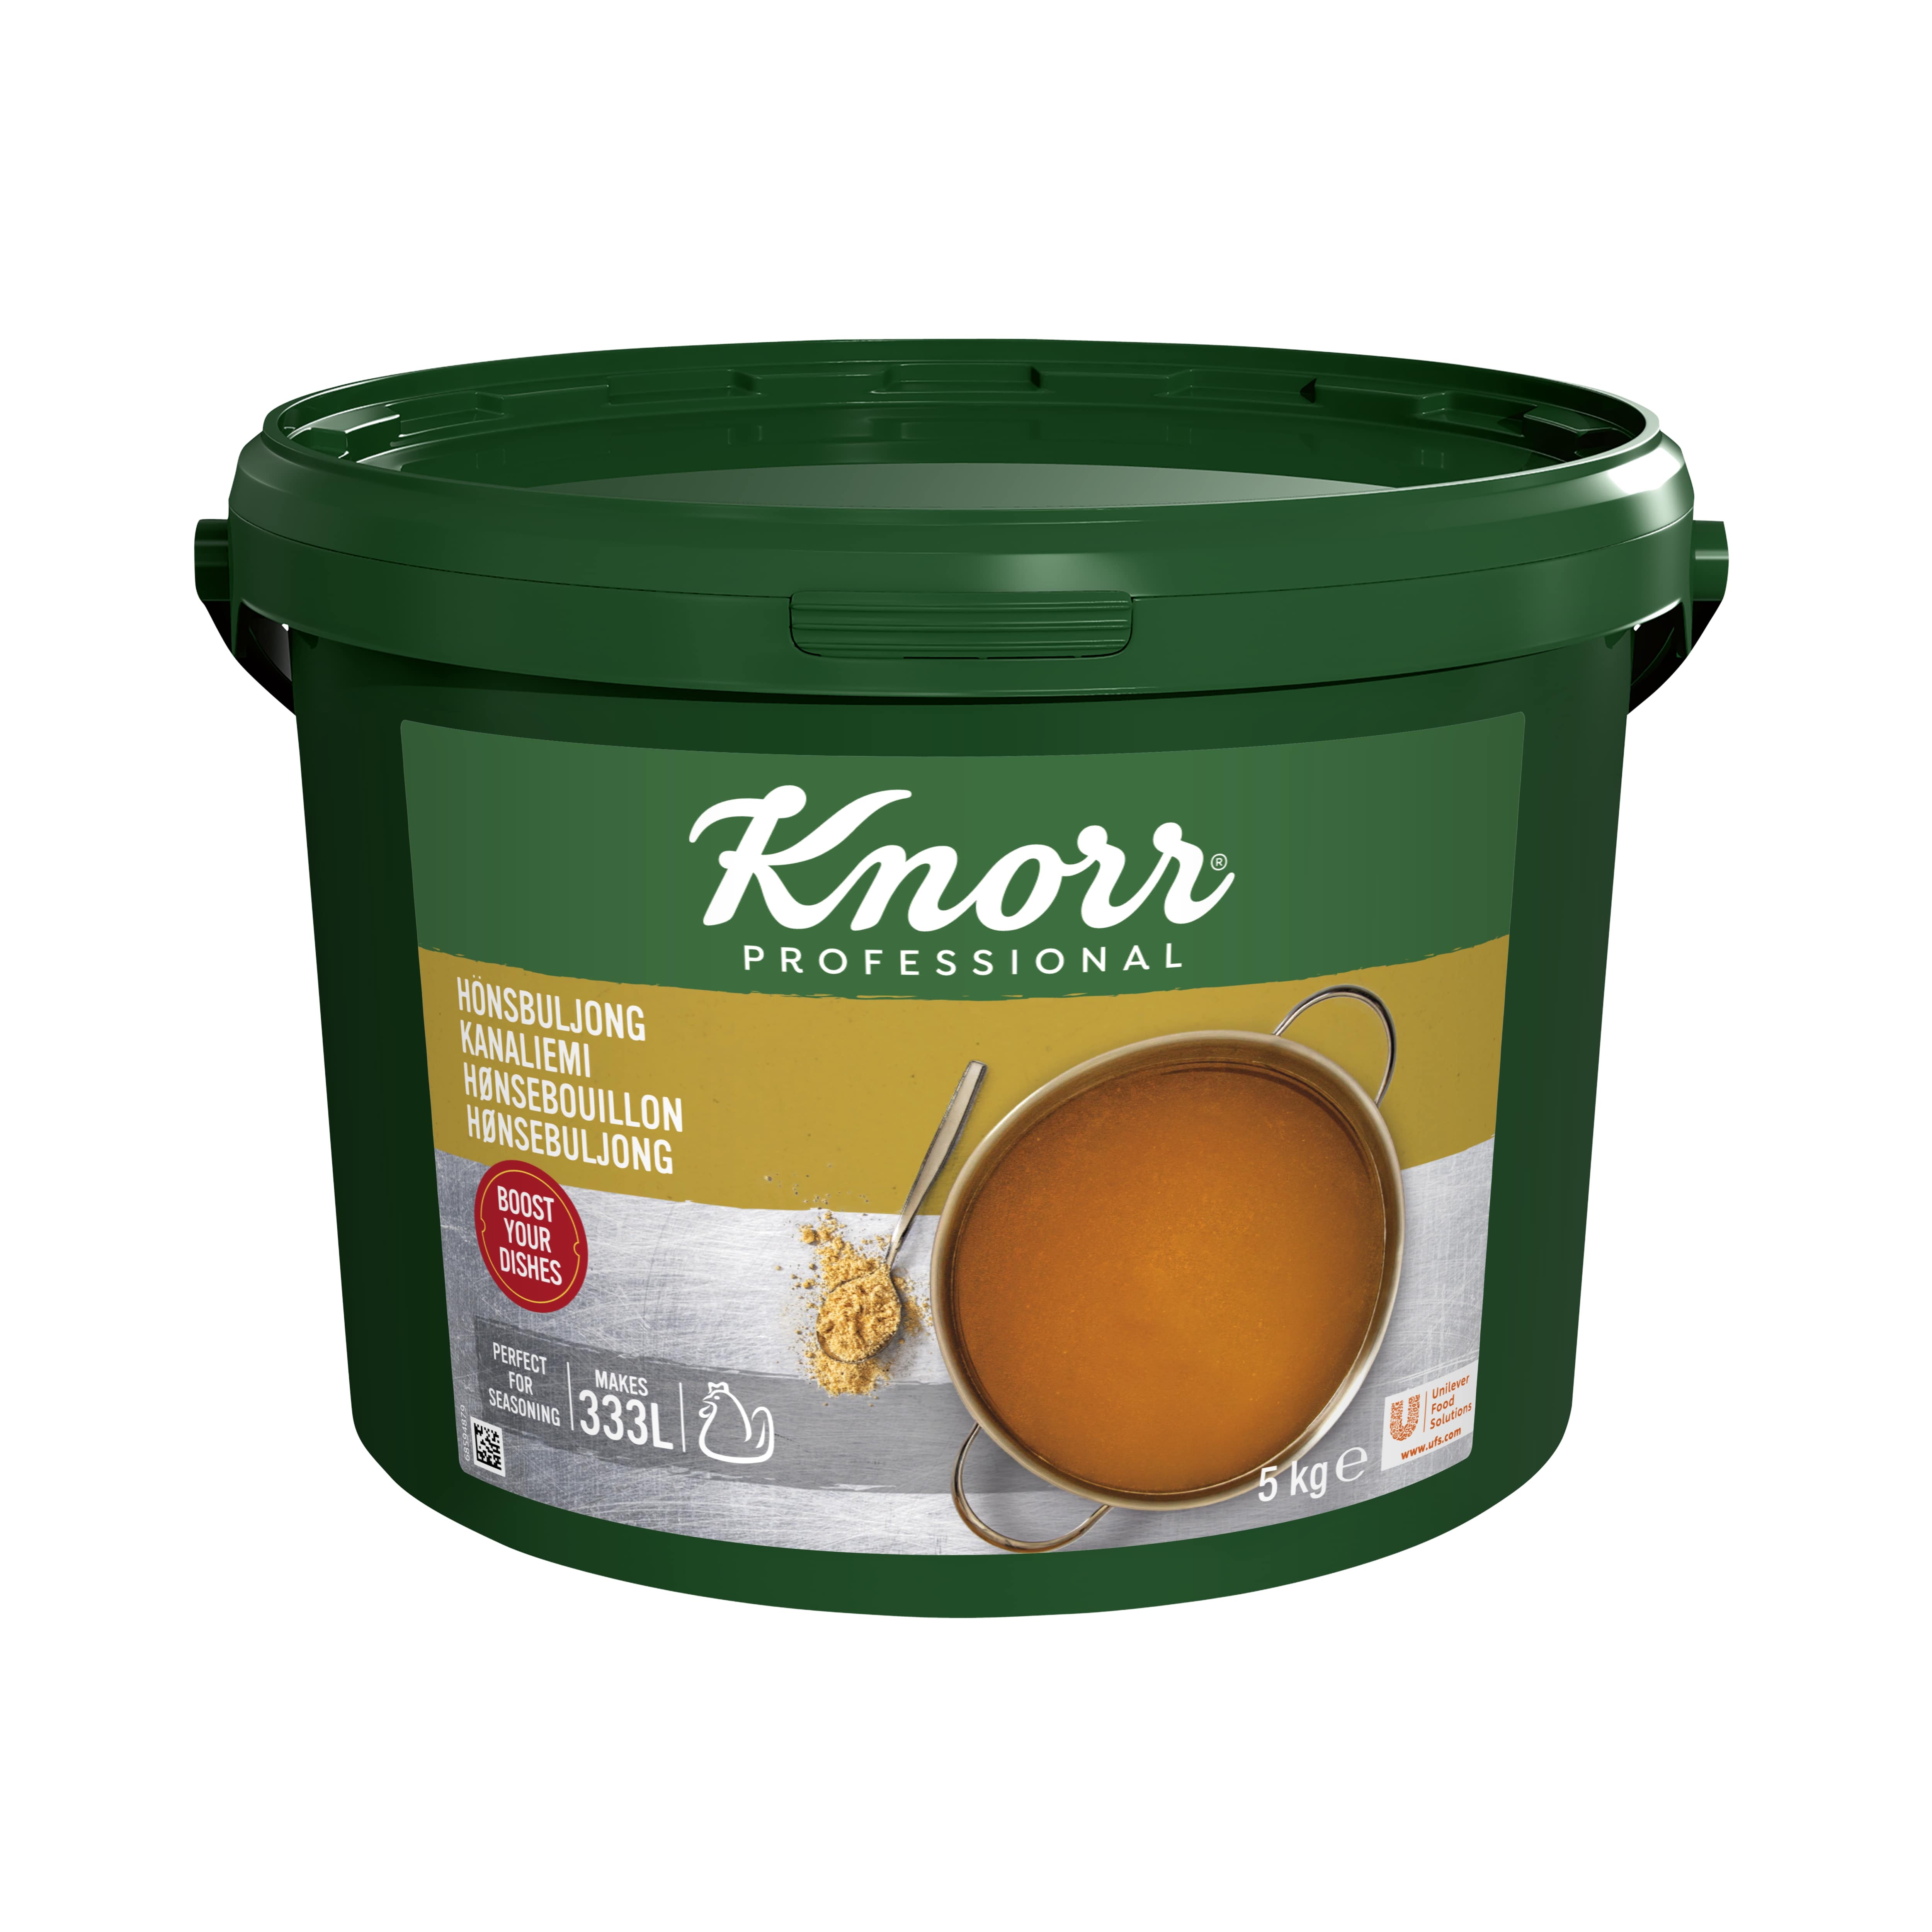 Knorr Kanaliemi 5 kg / 333 L - 